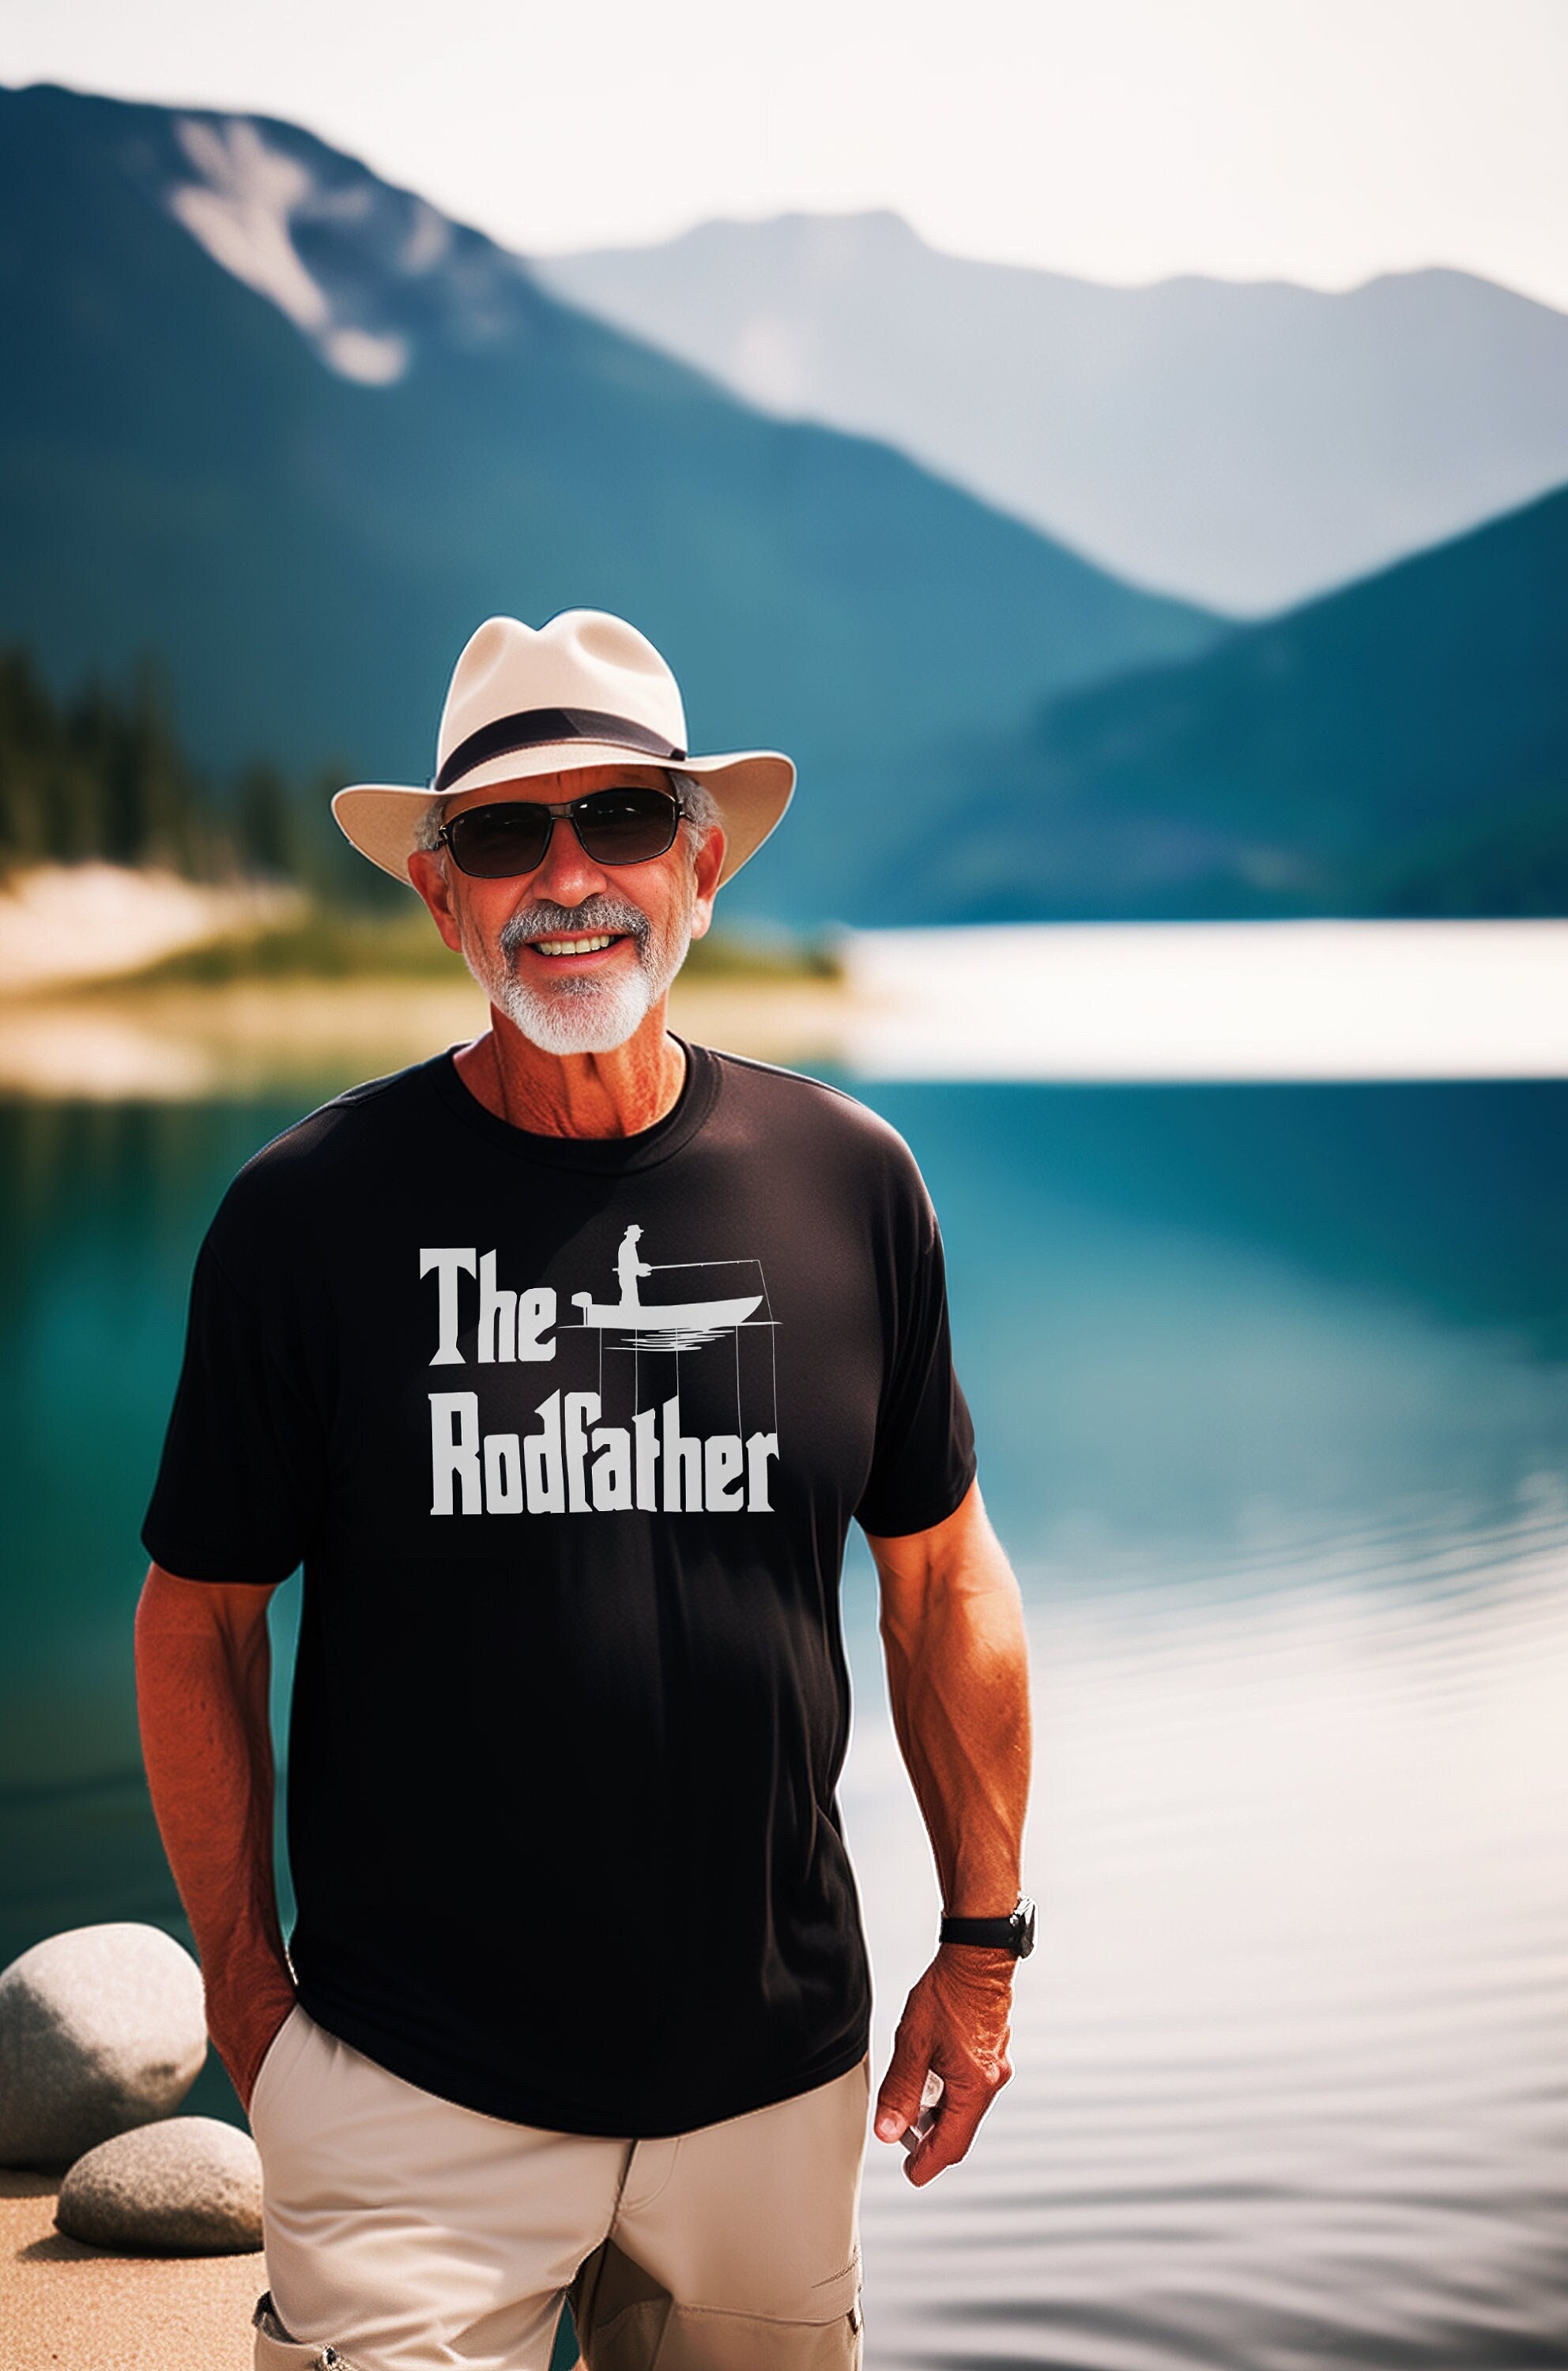 The Rodfather Shirt - Fishing T Shirt - Fisherman Shirt - Funny Fishing Shirt - Fishing Gifts - Vintage Fishing T Shirt - Father's Day